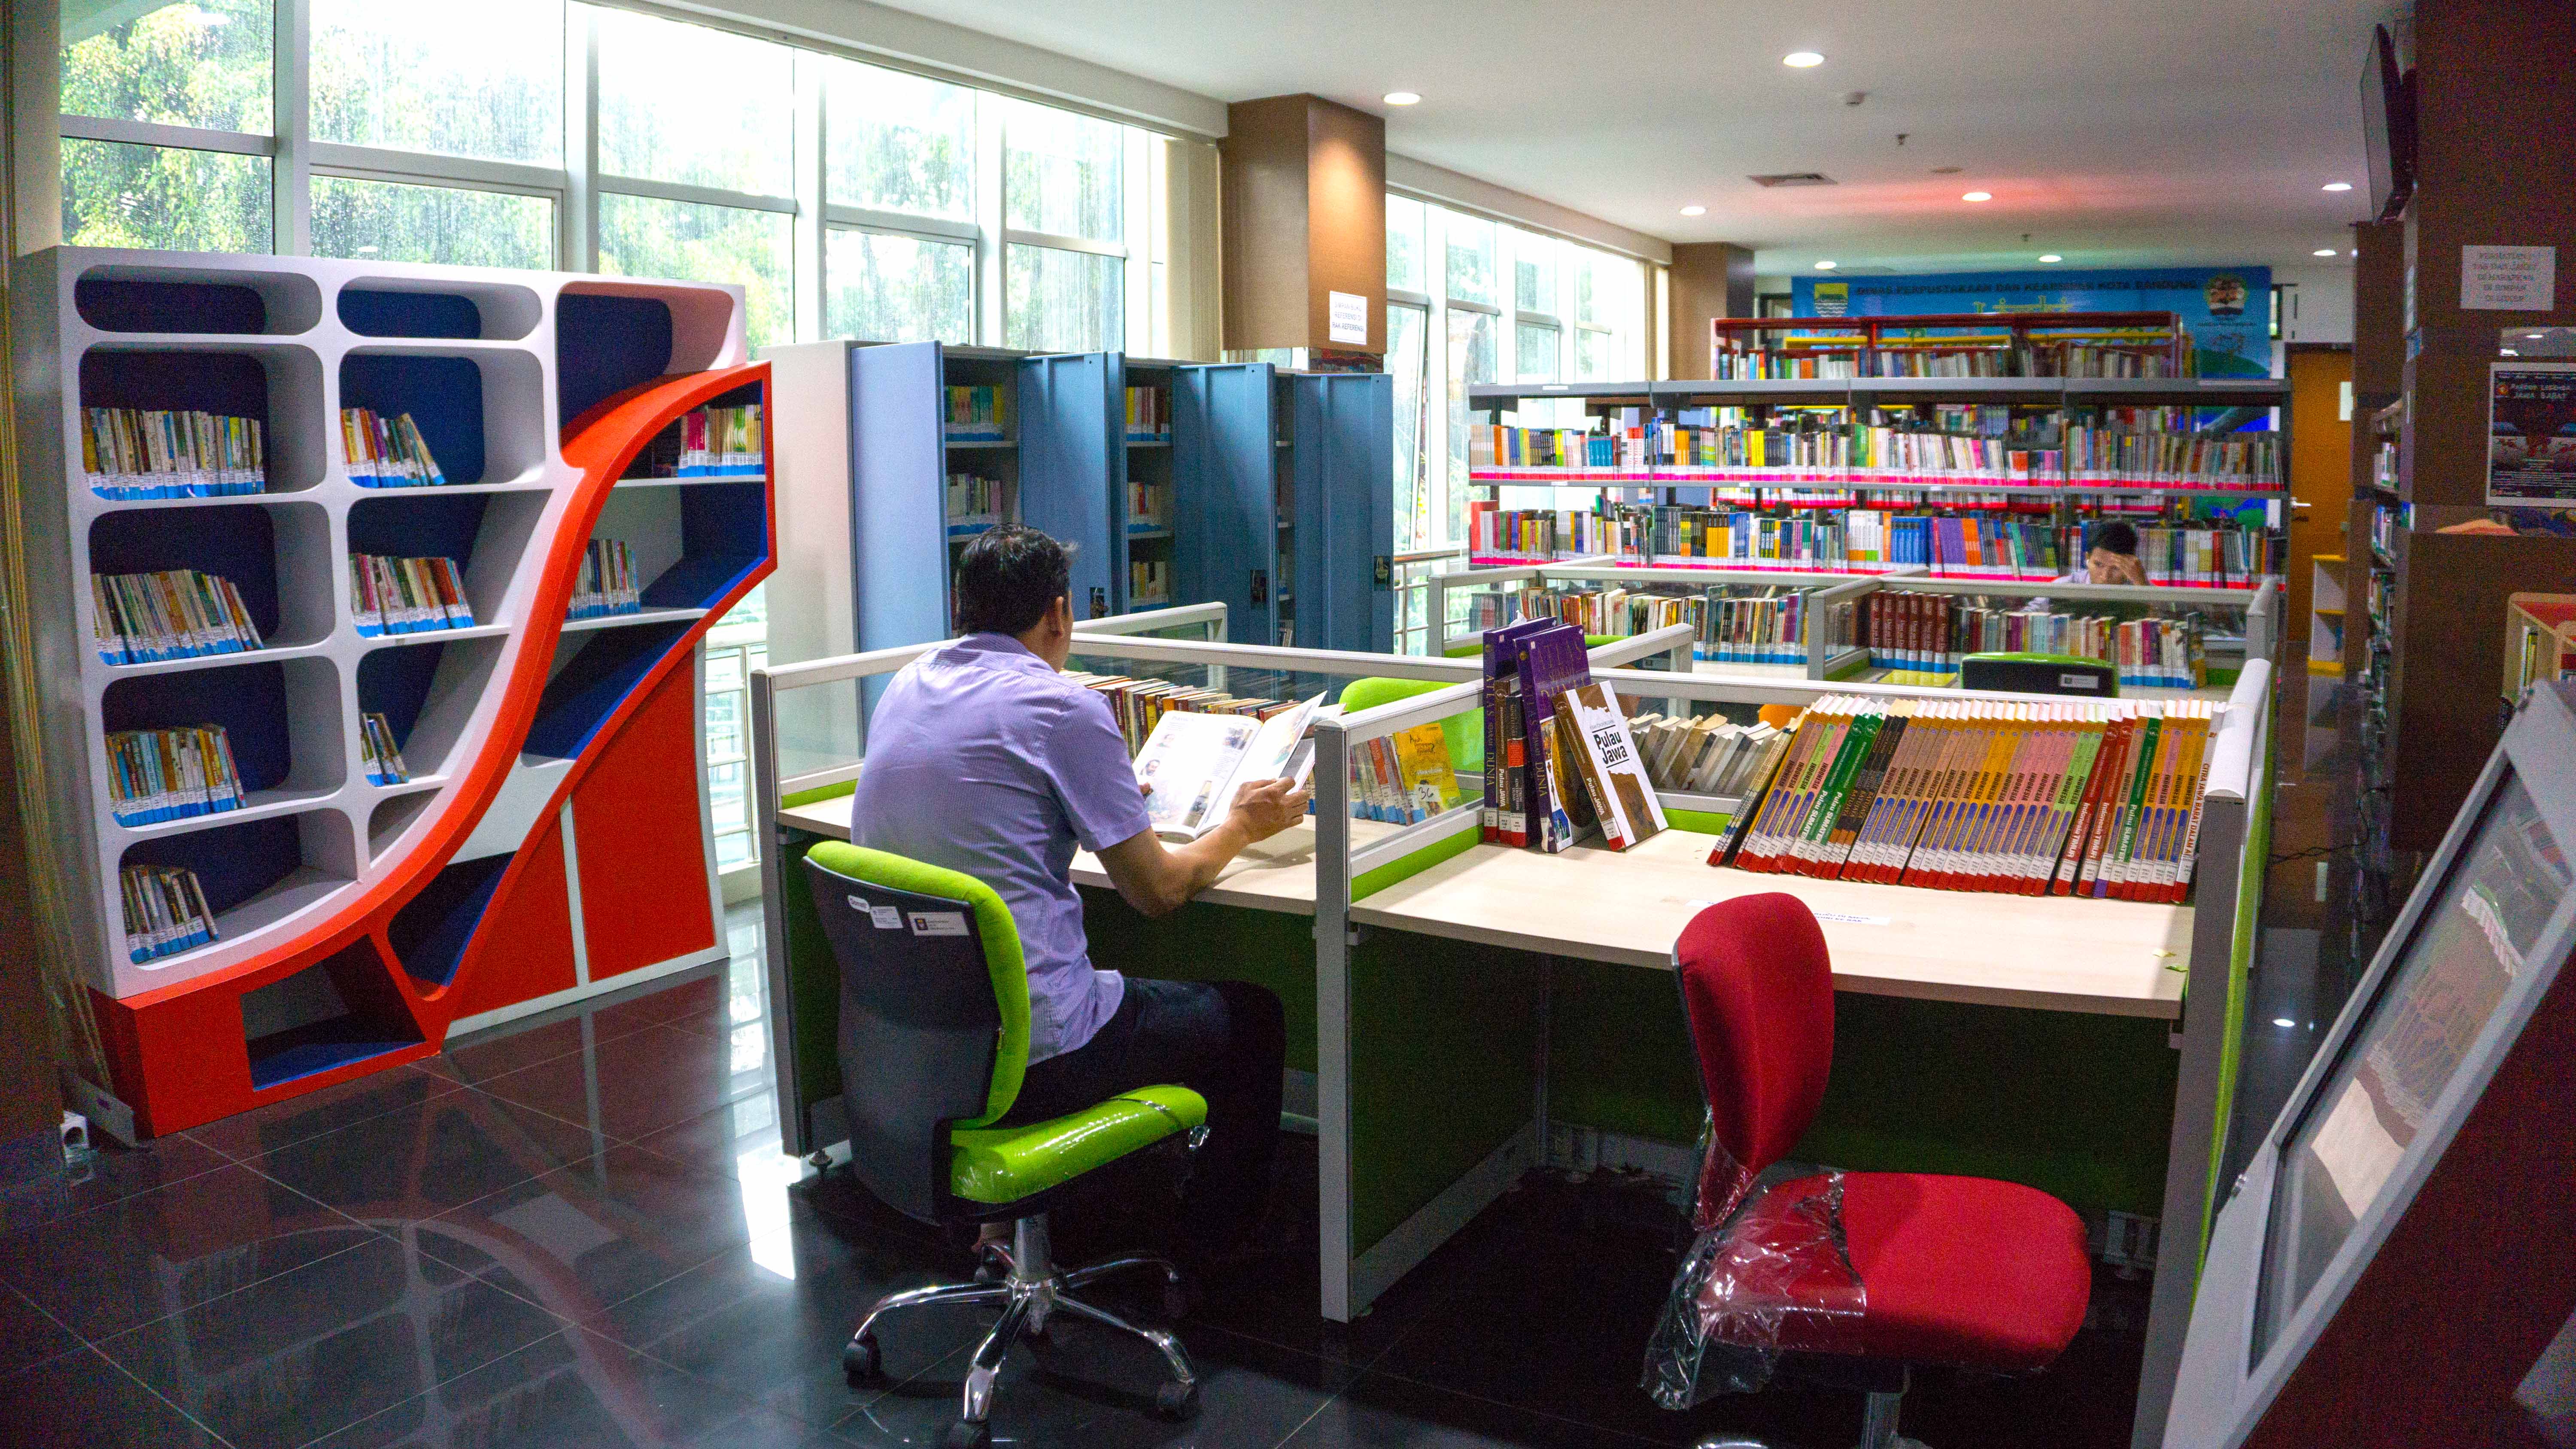 Daftar Perpustakaan Umum Yang Ada Di Bandung Your Bandung